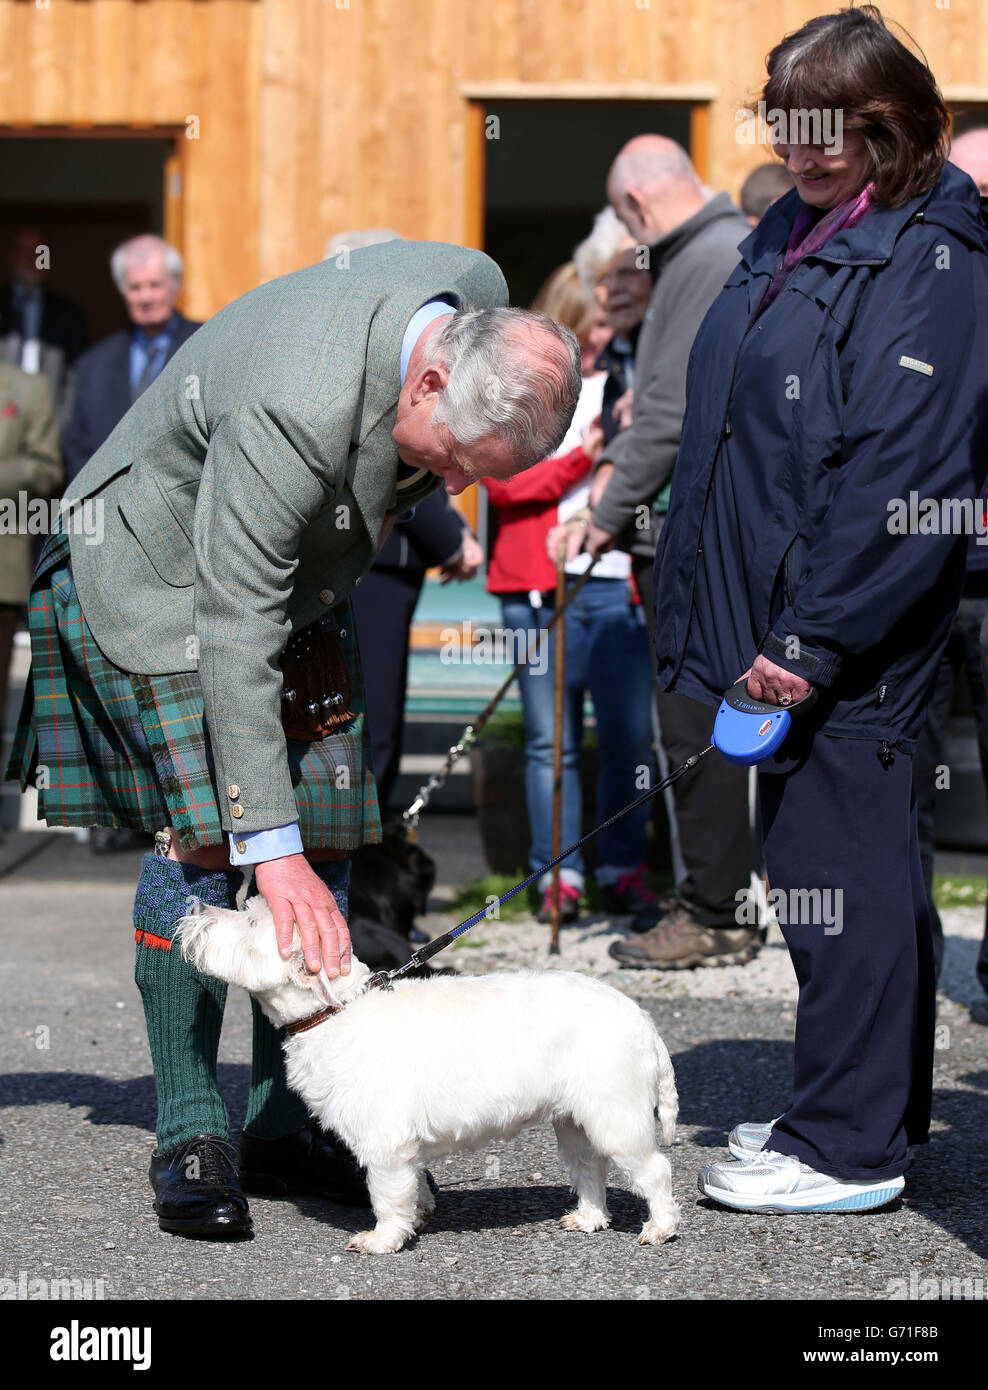 El duque de Rothesay visita Aberdeenshire. El duque de Rothesay patina a un perro durante una visita al parque ballater Caravan en Aberdeenshire. Foto de stock